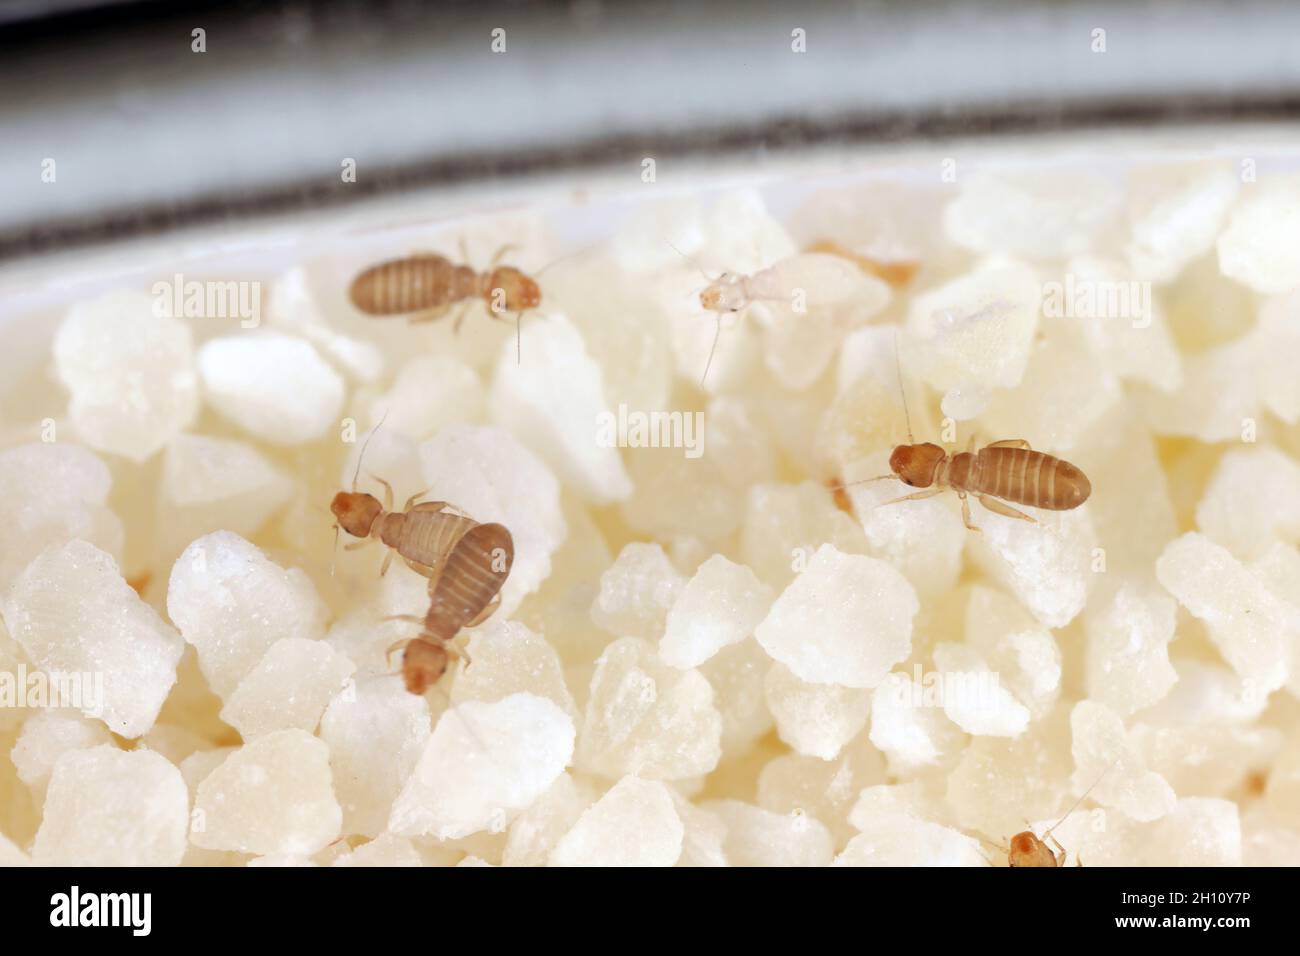 Psociden der Gattung Liposcelis - Psocoptera - Buchläuse, Barklice oder Barklies, ein bekannter Schädling von gelagerten Produkten. Insekten auf Grieß. Stockfoto